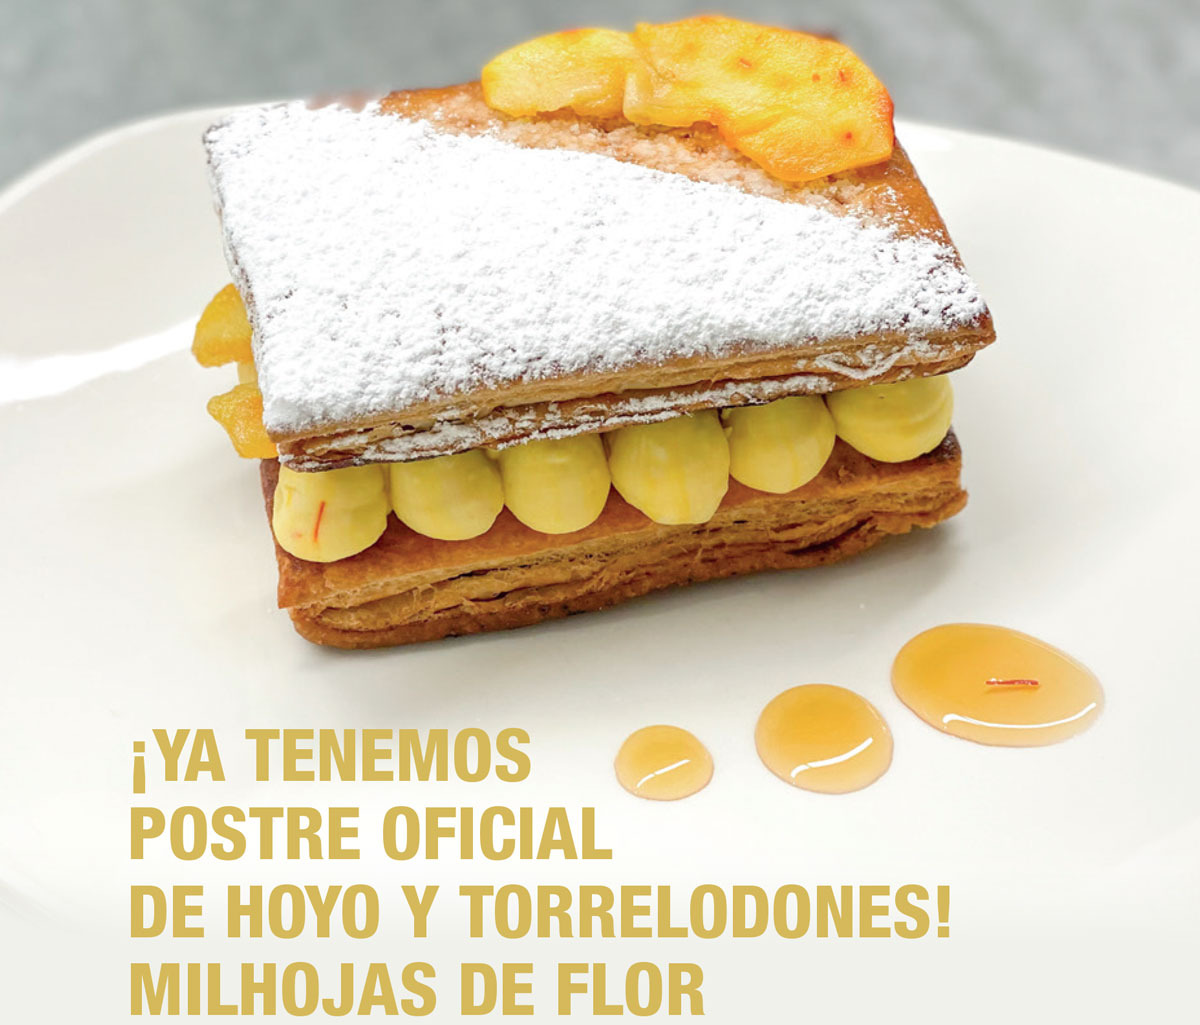 La receta del “Milhojas de Flor”, el postre oficial de Torrelodones y Hoyo de Manzanares